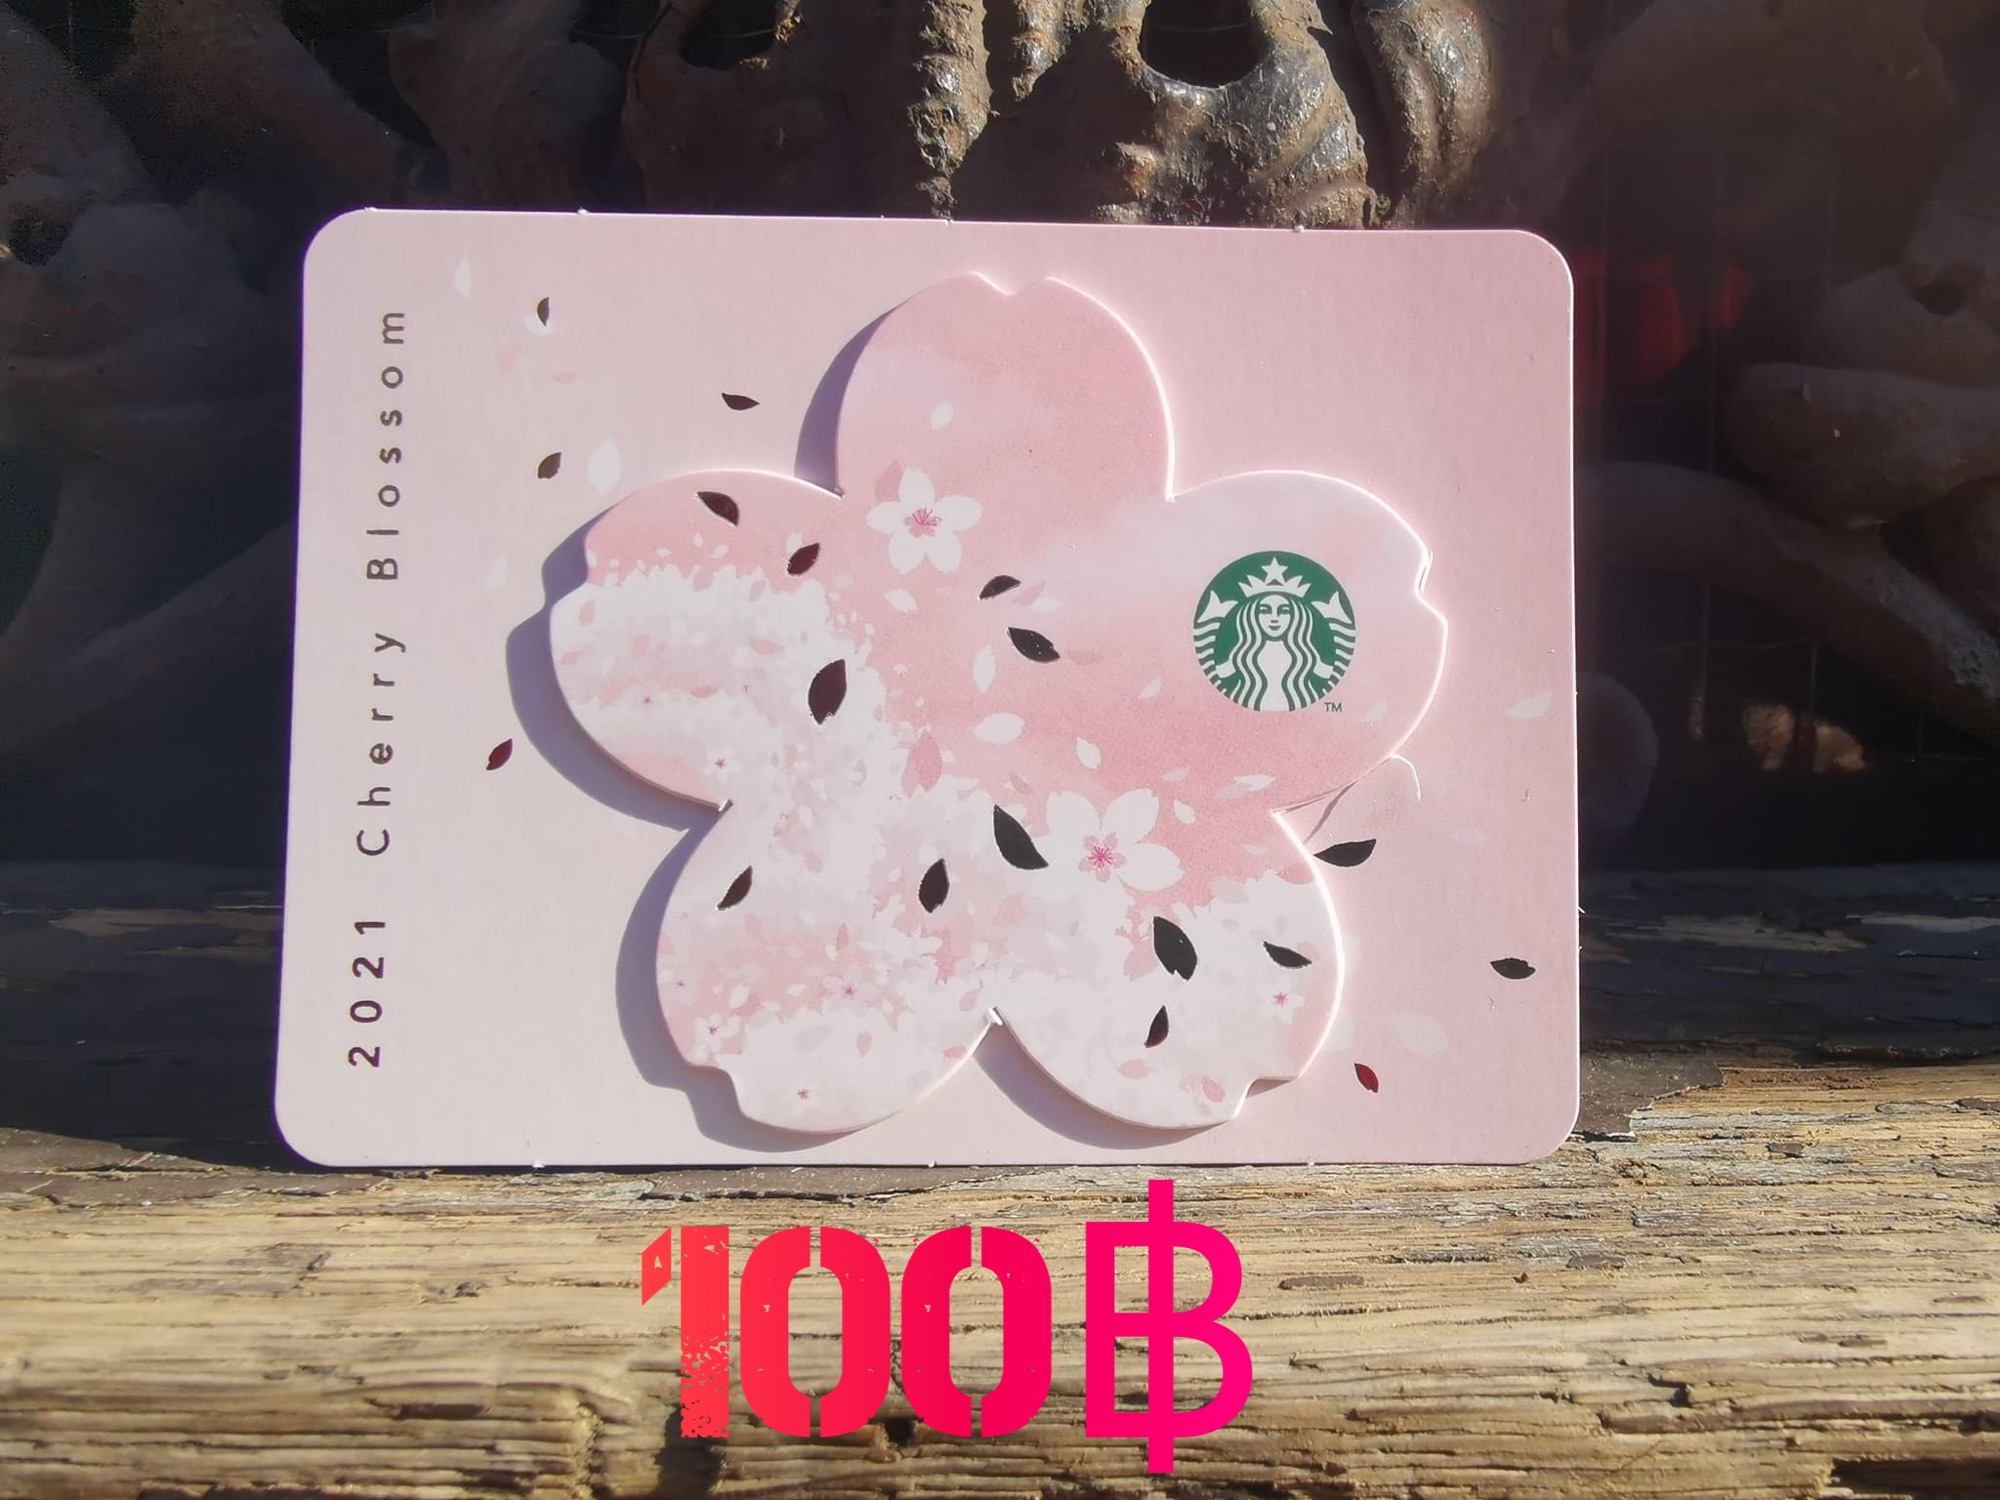 บัตร Starbucks 100บาท #จัดส่งรหัสทางแชท